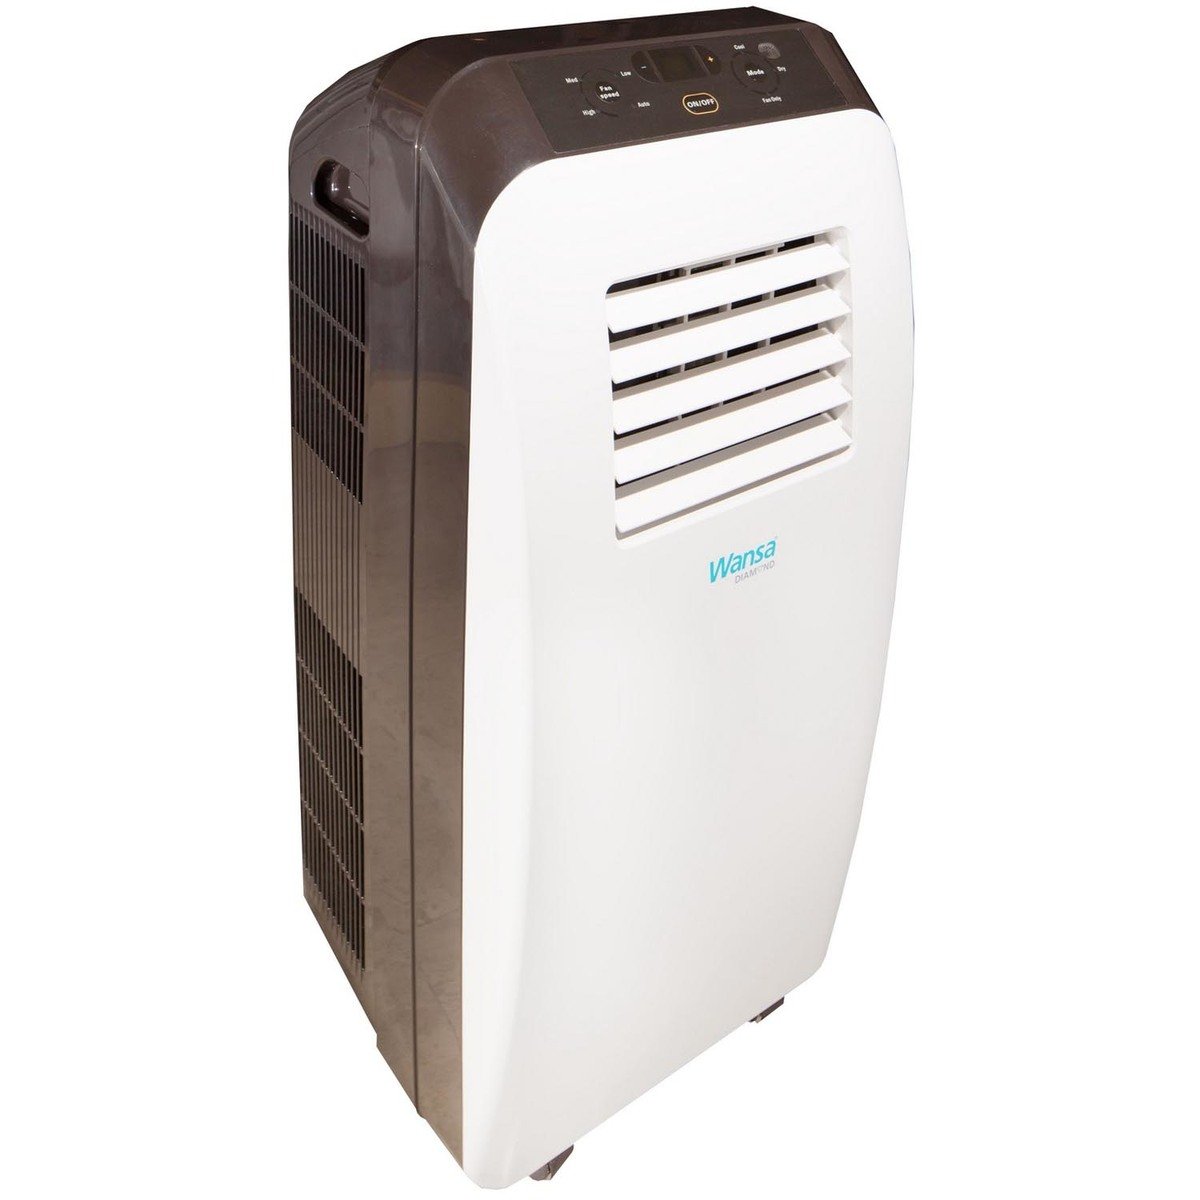 Wansa Portable Air Conditioner WPA09CCG 0.75Ton